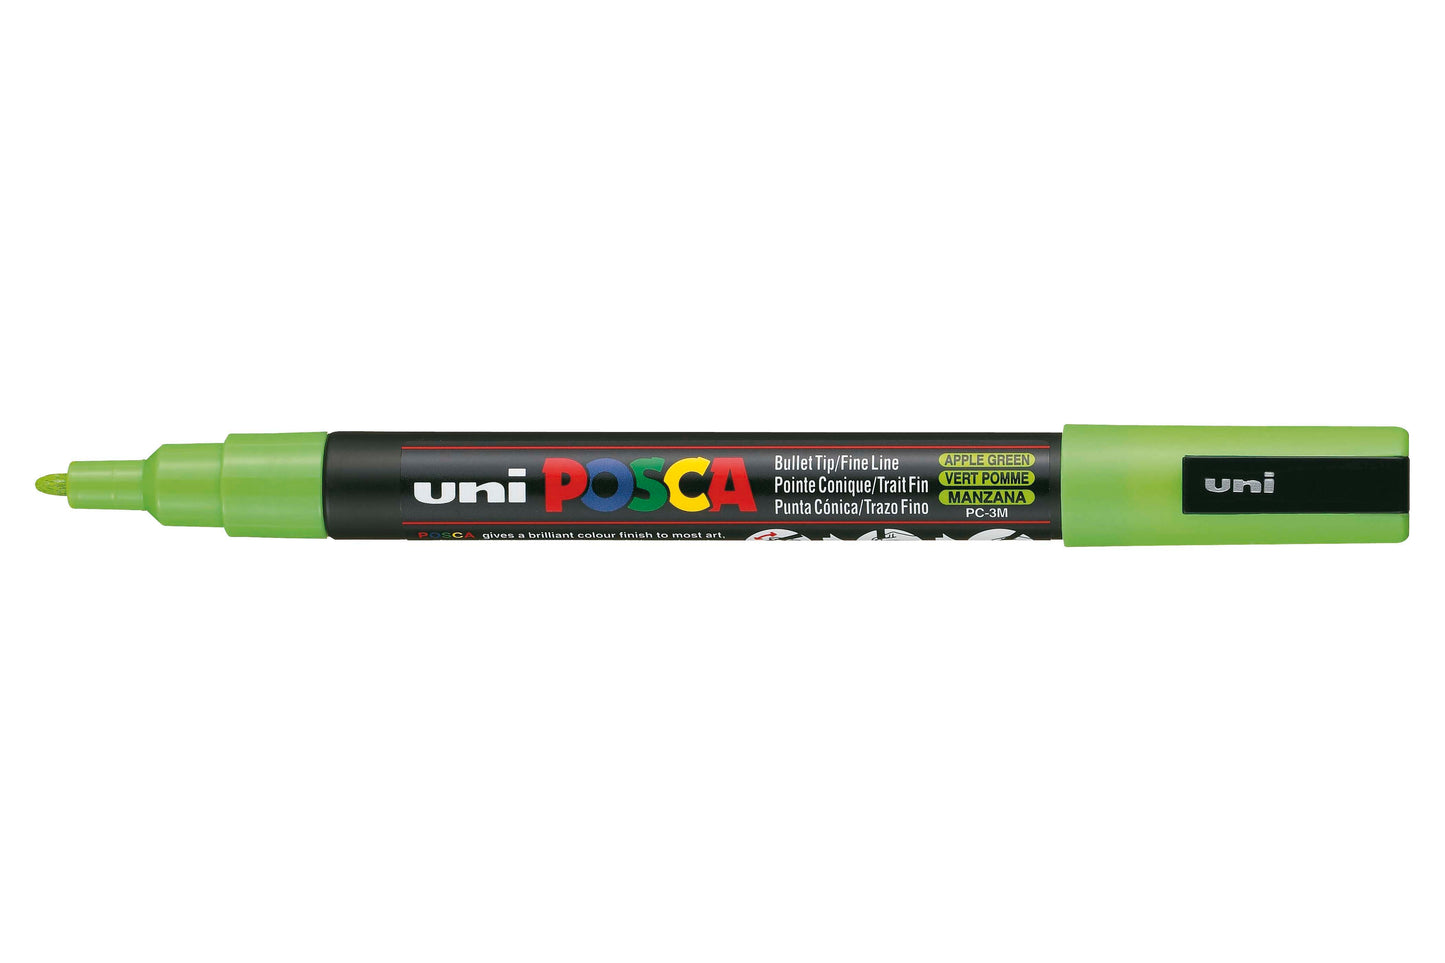 Uni Posca Paint Marker Fine, 0.9 - 1.3mm Bullet Tip - PC-3M